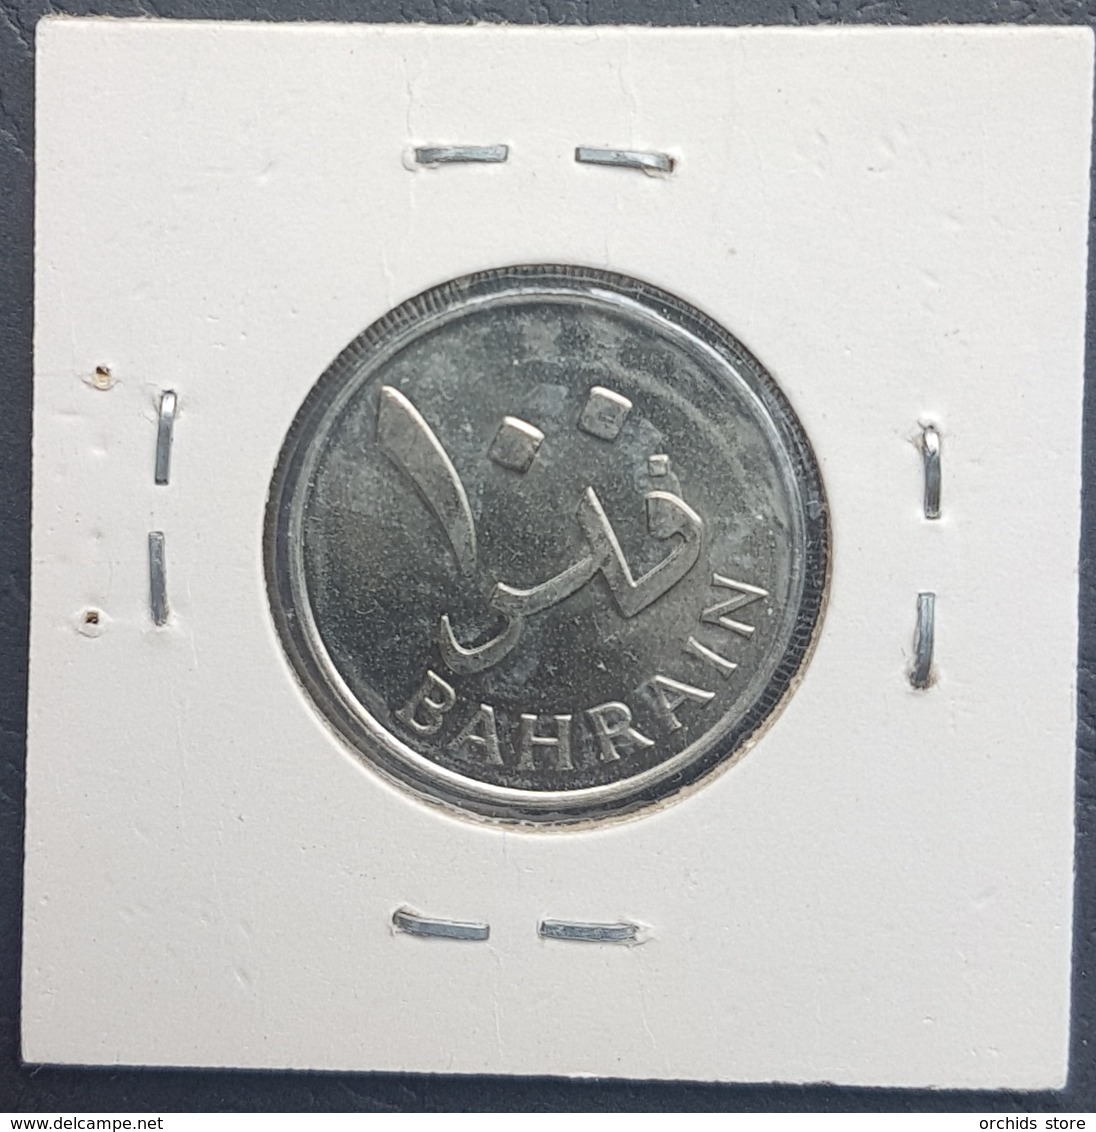 MA - Bahrain 1965 Coin 100 Fils - UNC - Bahrain